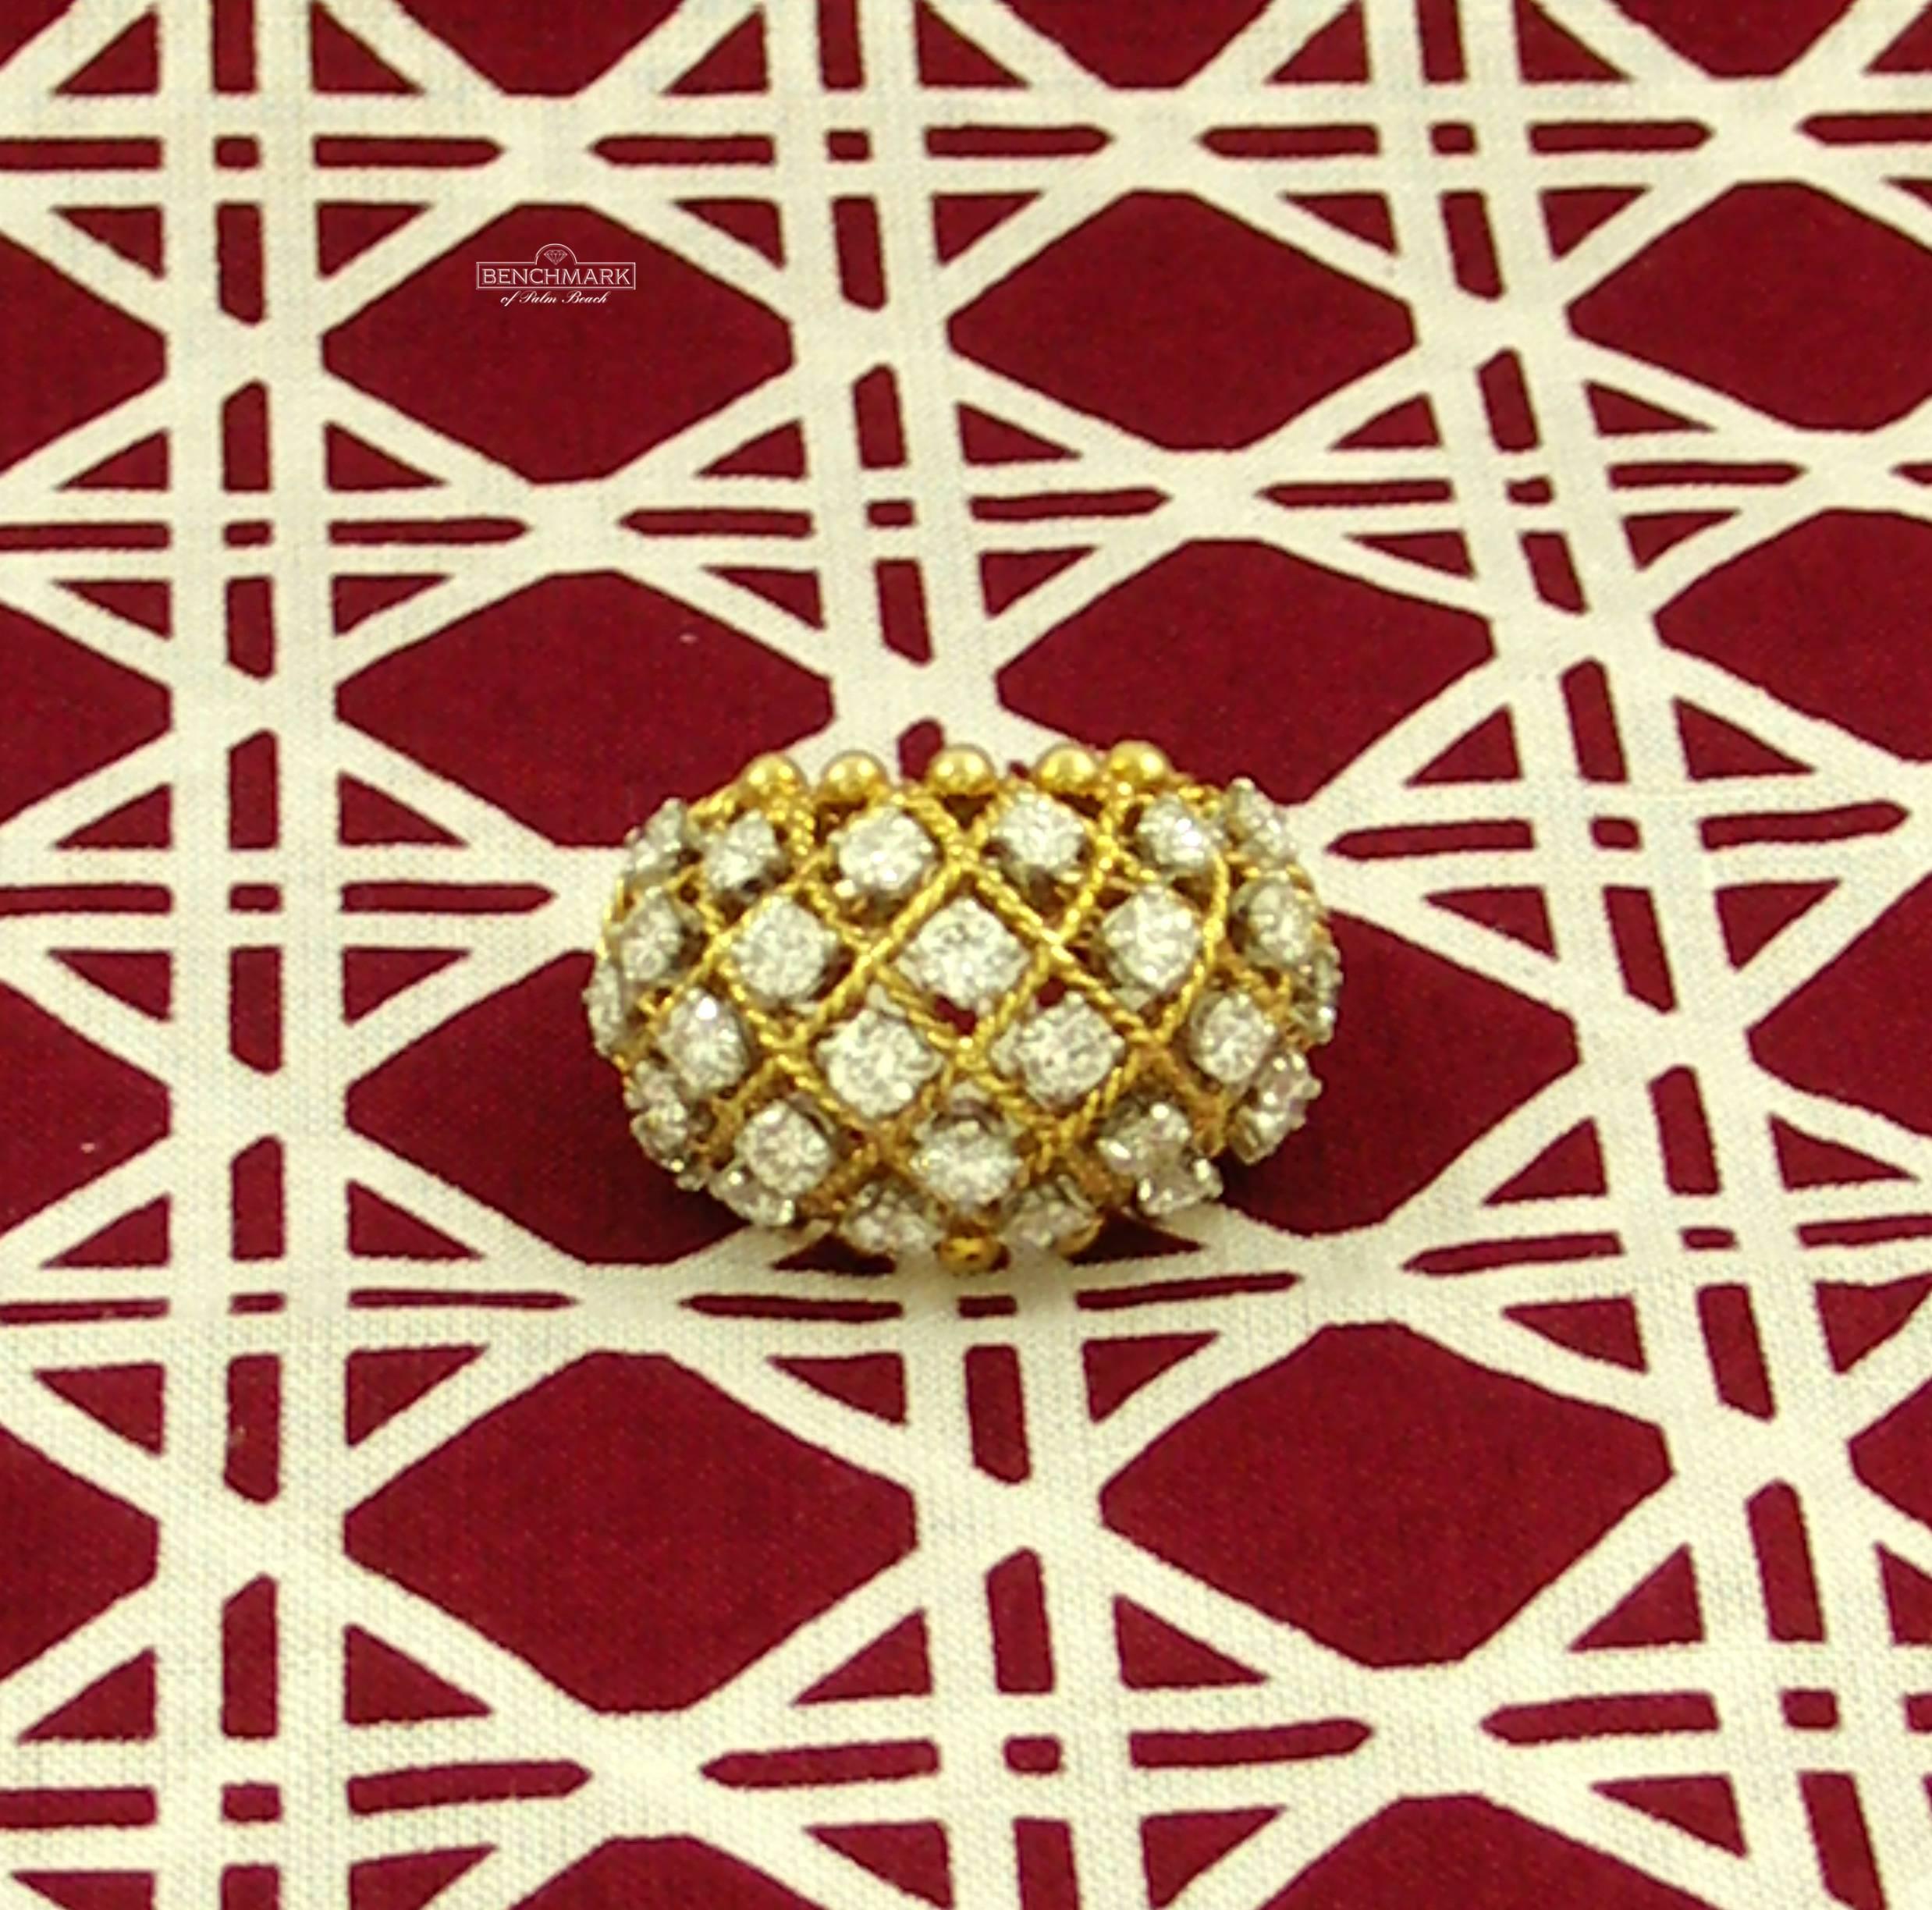 Van Cleef & Arpels Lattice Diamond Gold Ring 2